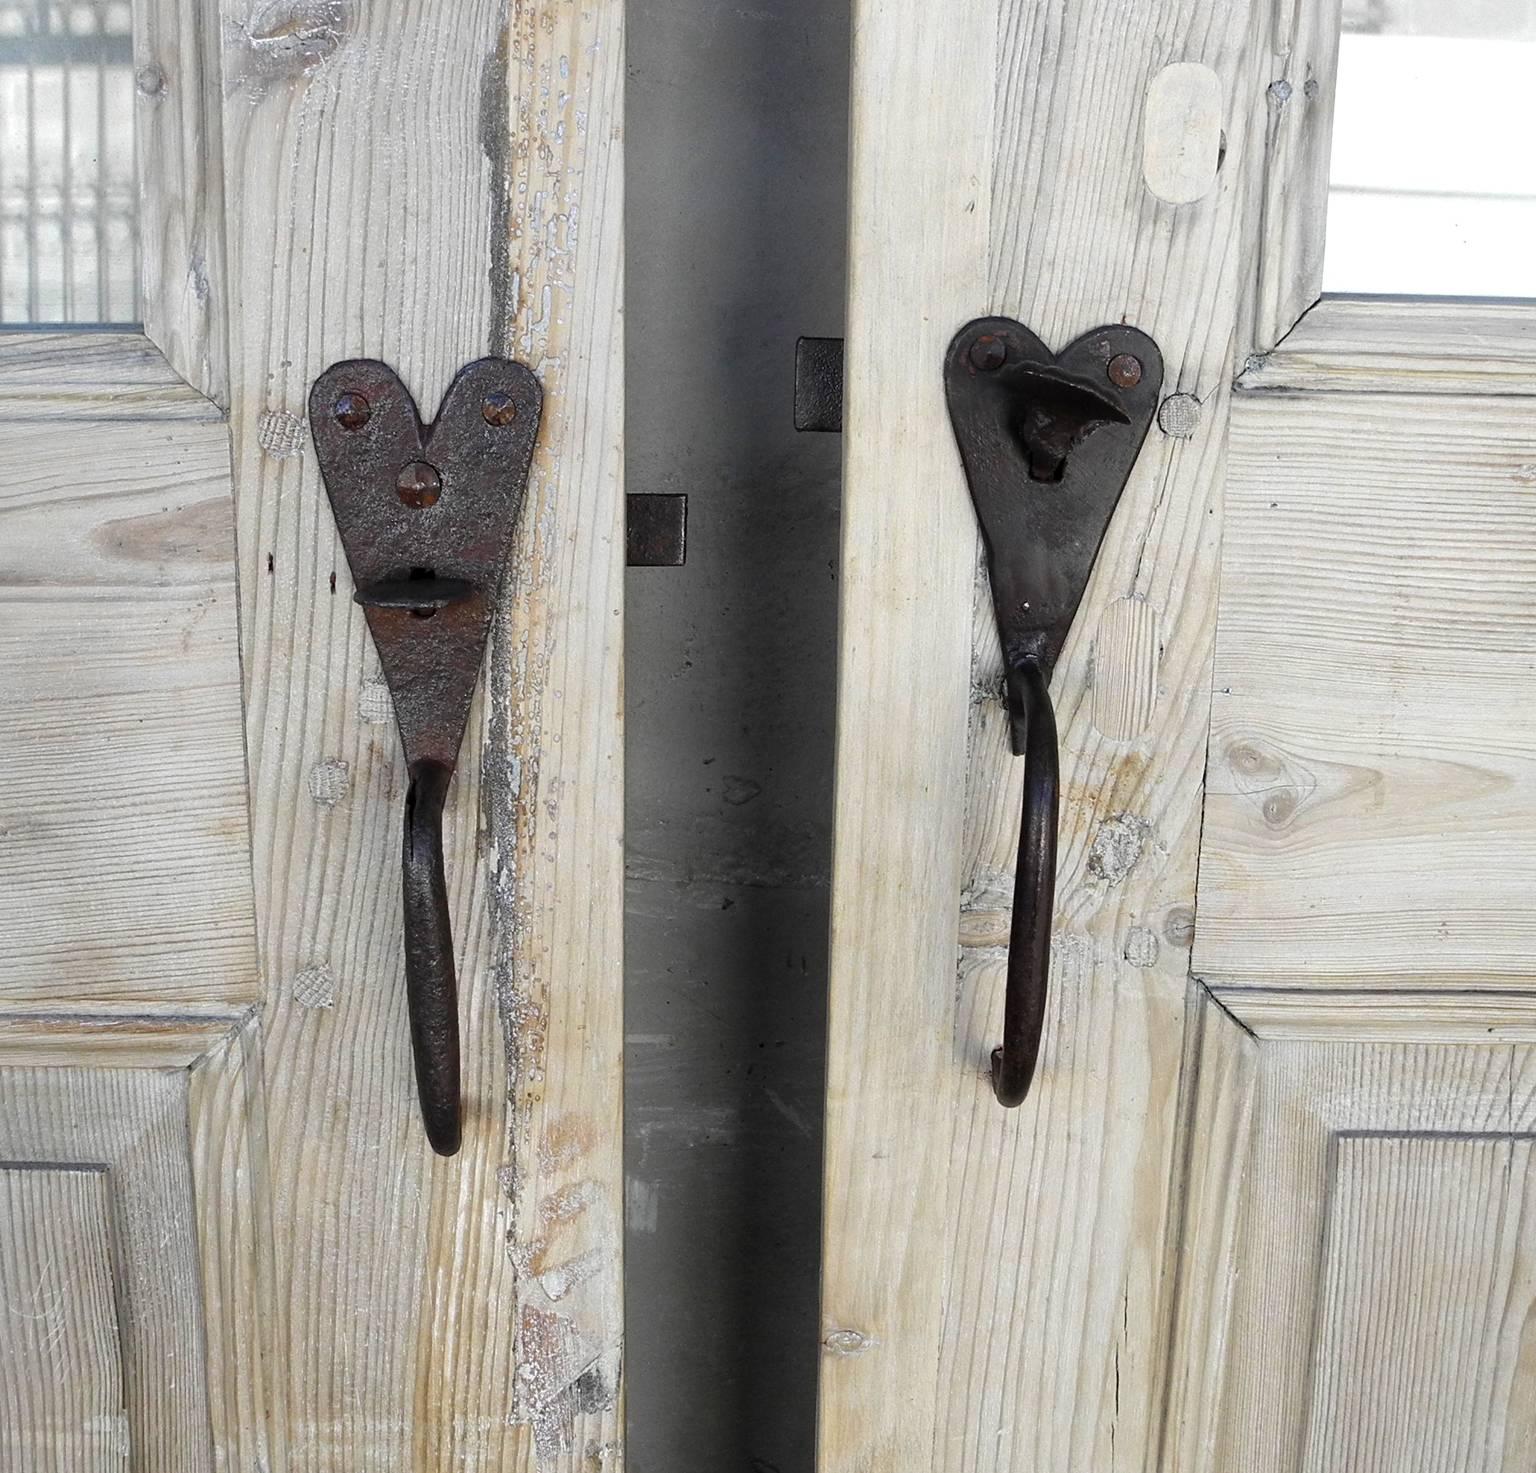 18th century door hardware